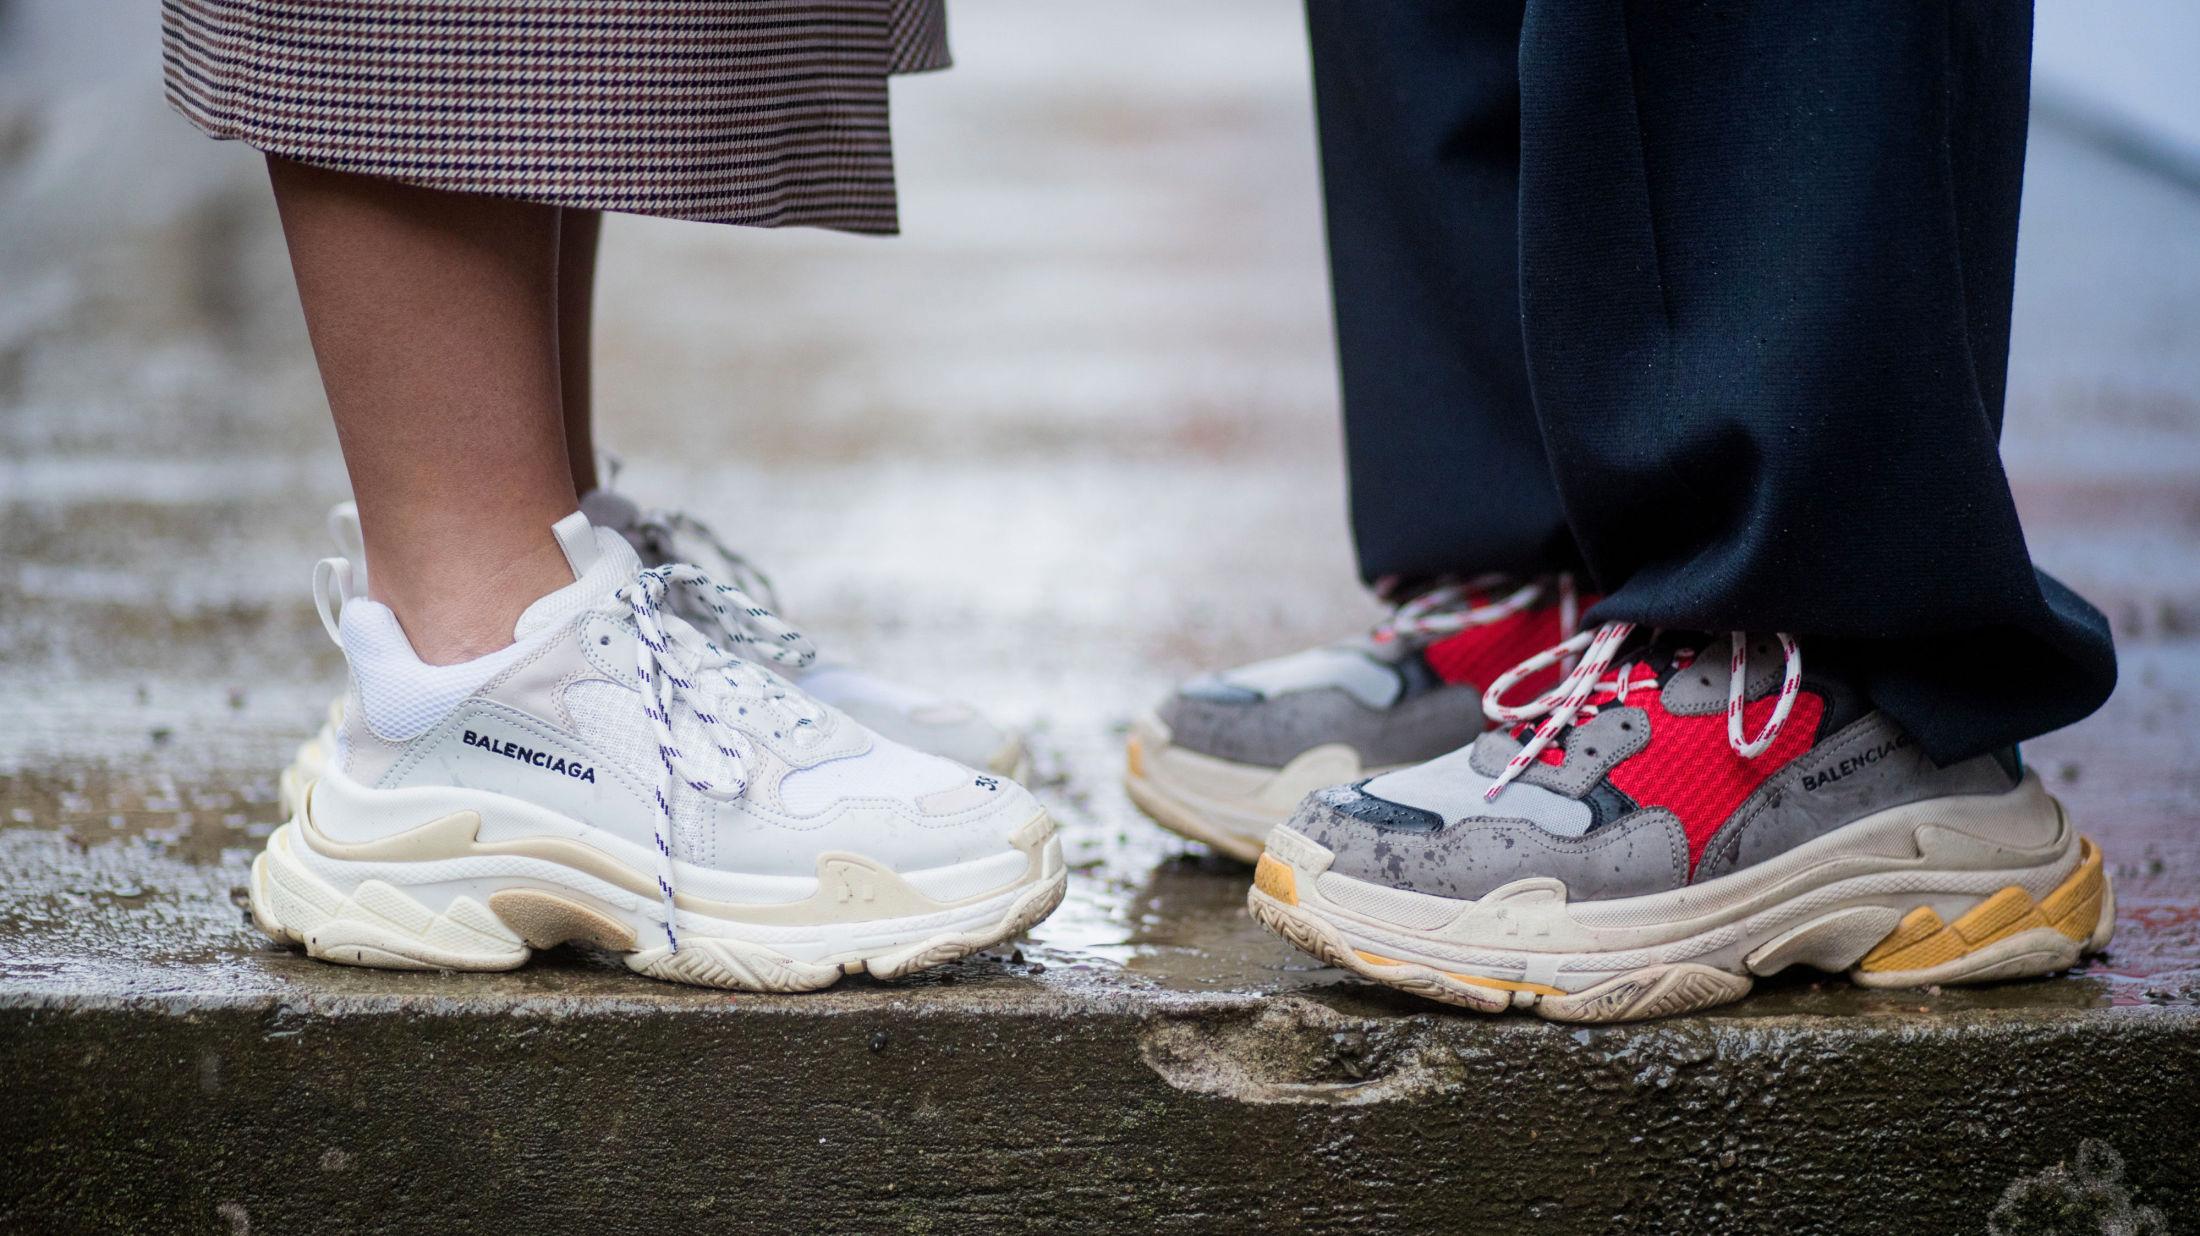 HOT: Disse skoene har blitt en favoritt blant motepersonligheter verden over. Foto: Getty Images.